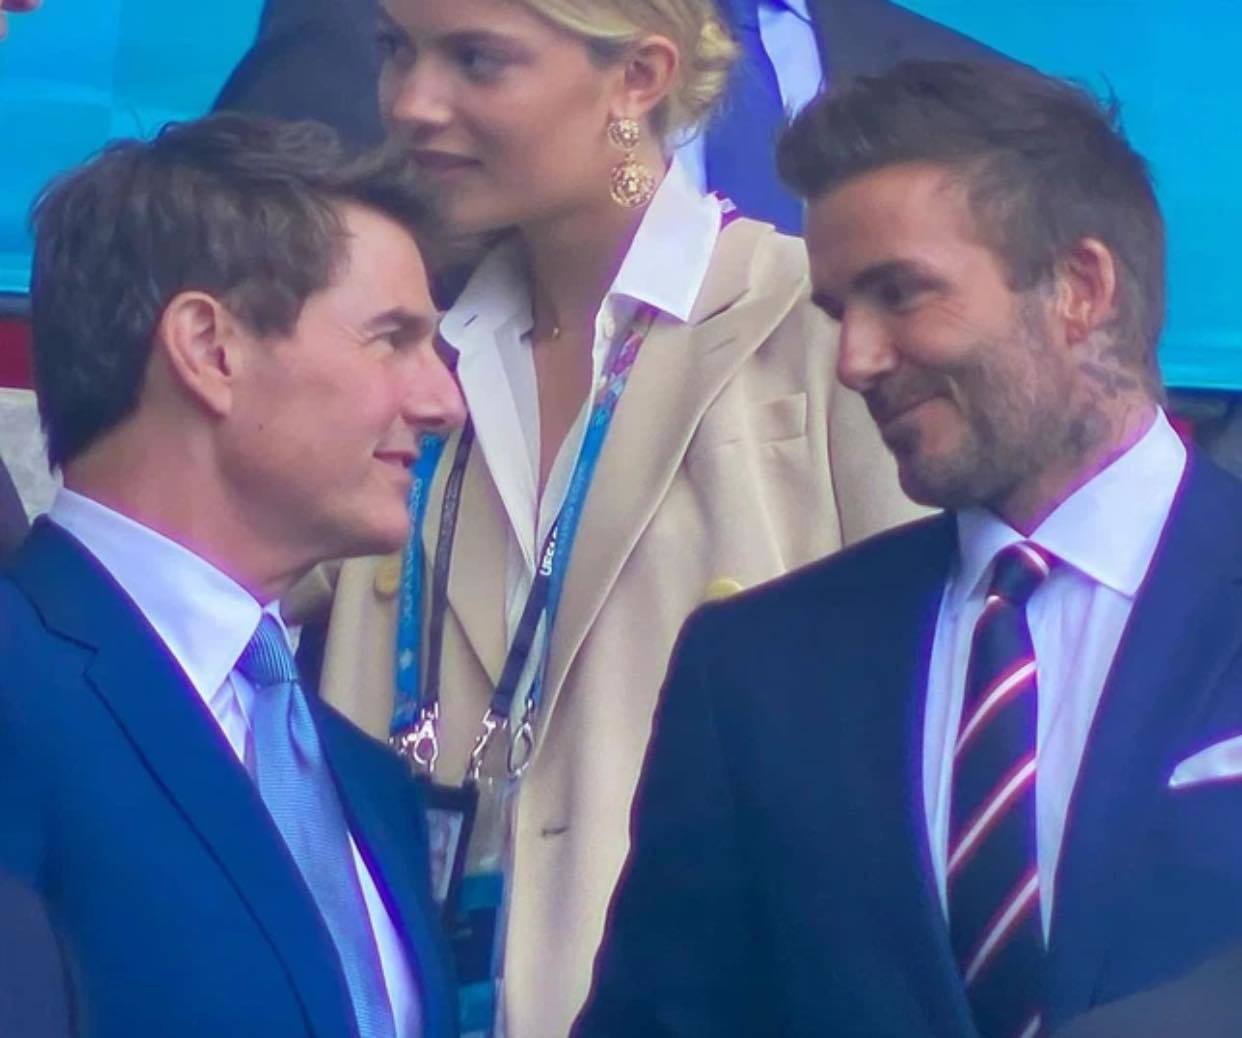 Clip hot nhất đêm Chung kết Euro 2020: David Beckham và Tom Cruise chung khung hình khiến hội chị em thổn thức 1